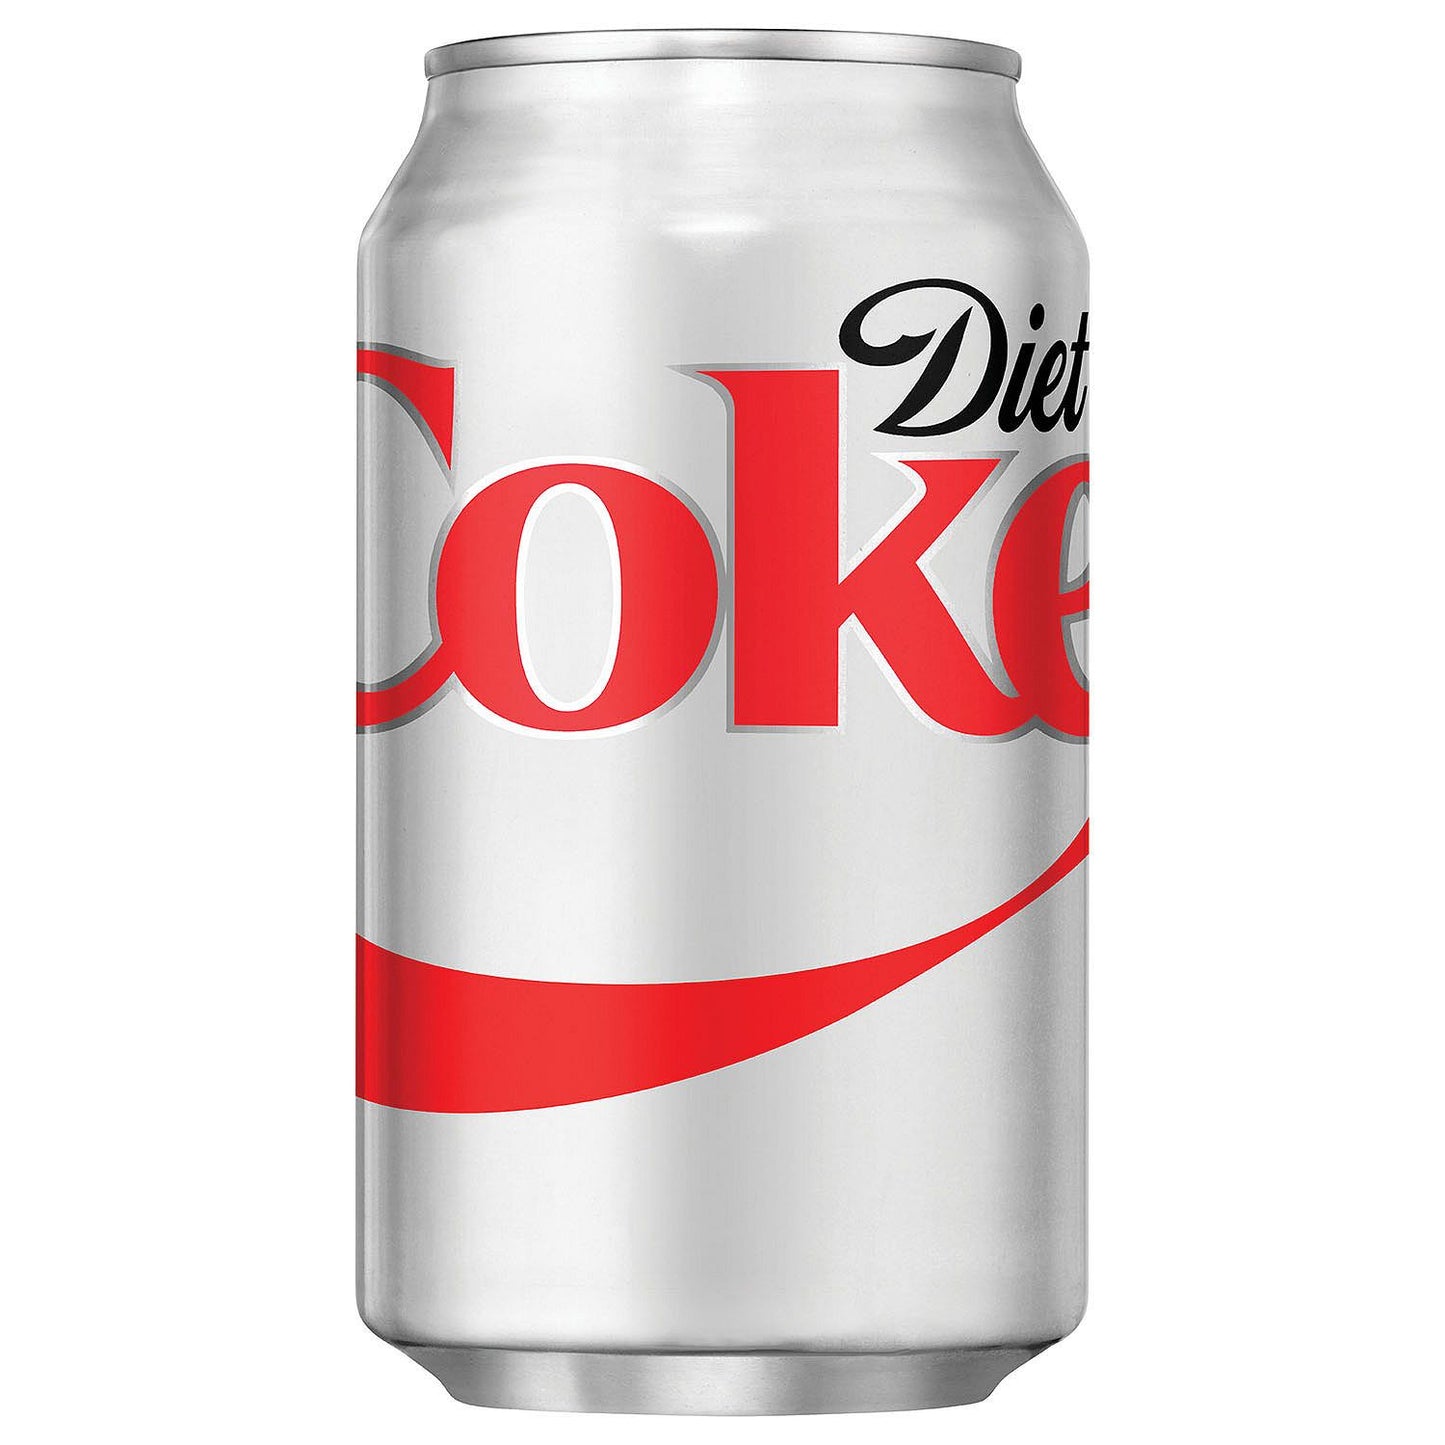 Coca-Cola Mini Cans (7.5 oz., 30 pk.)